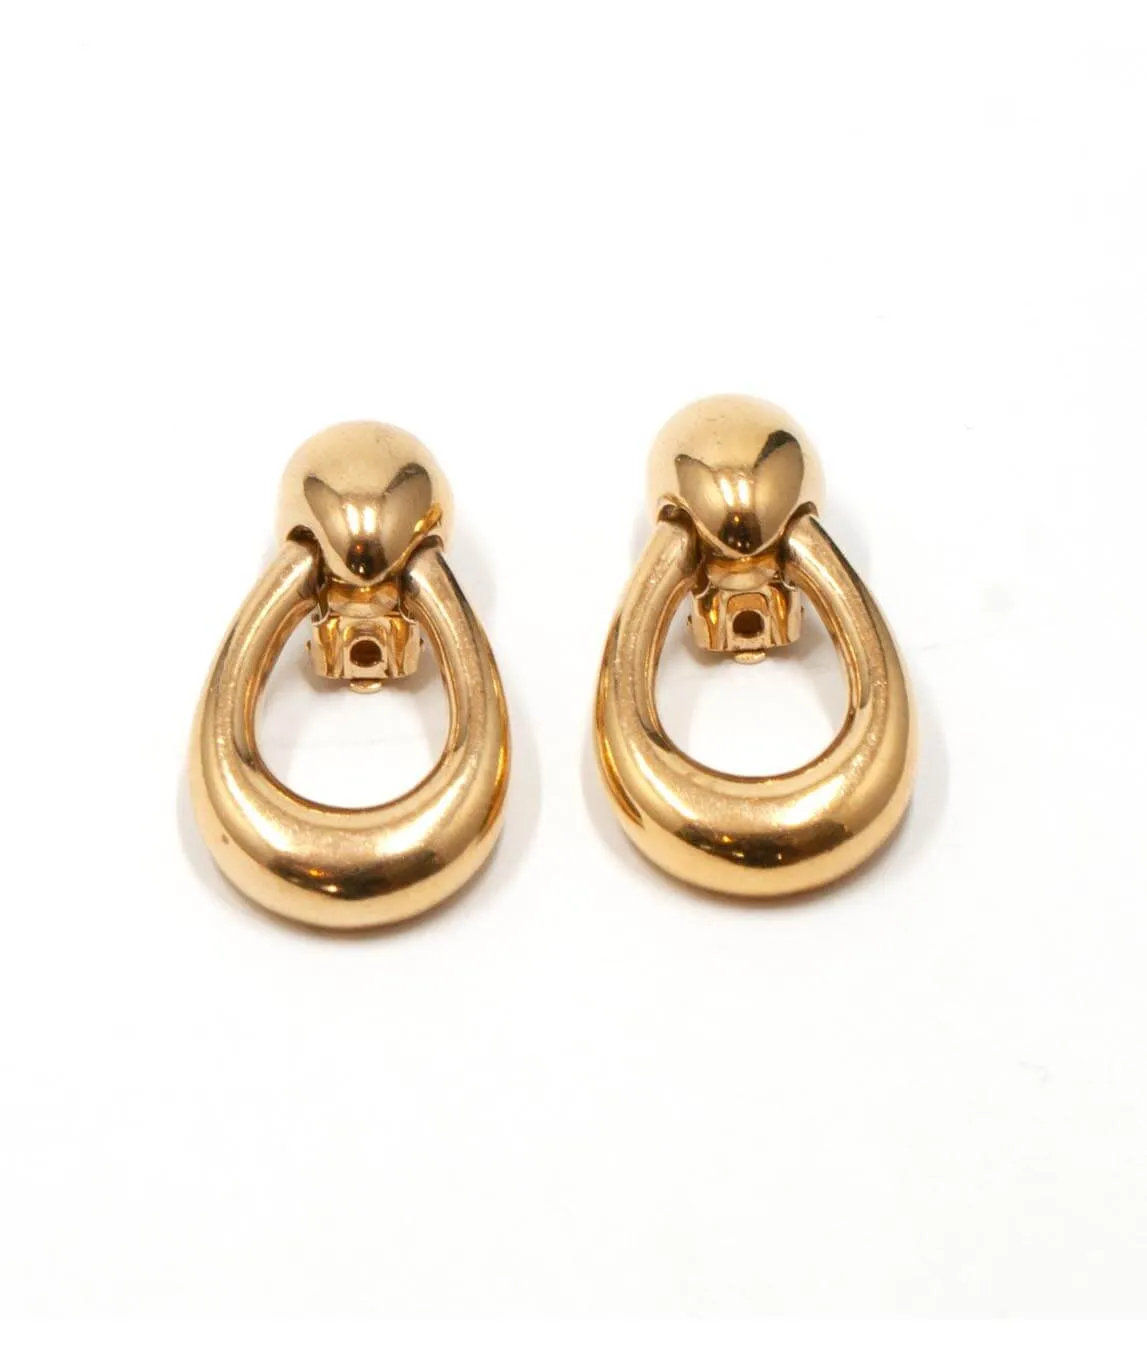 Vintage Dior door knocker earrings gold plated